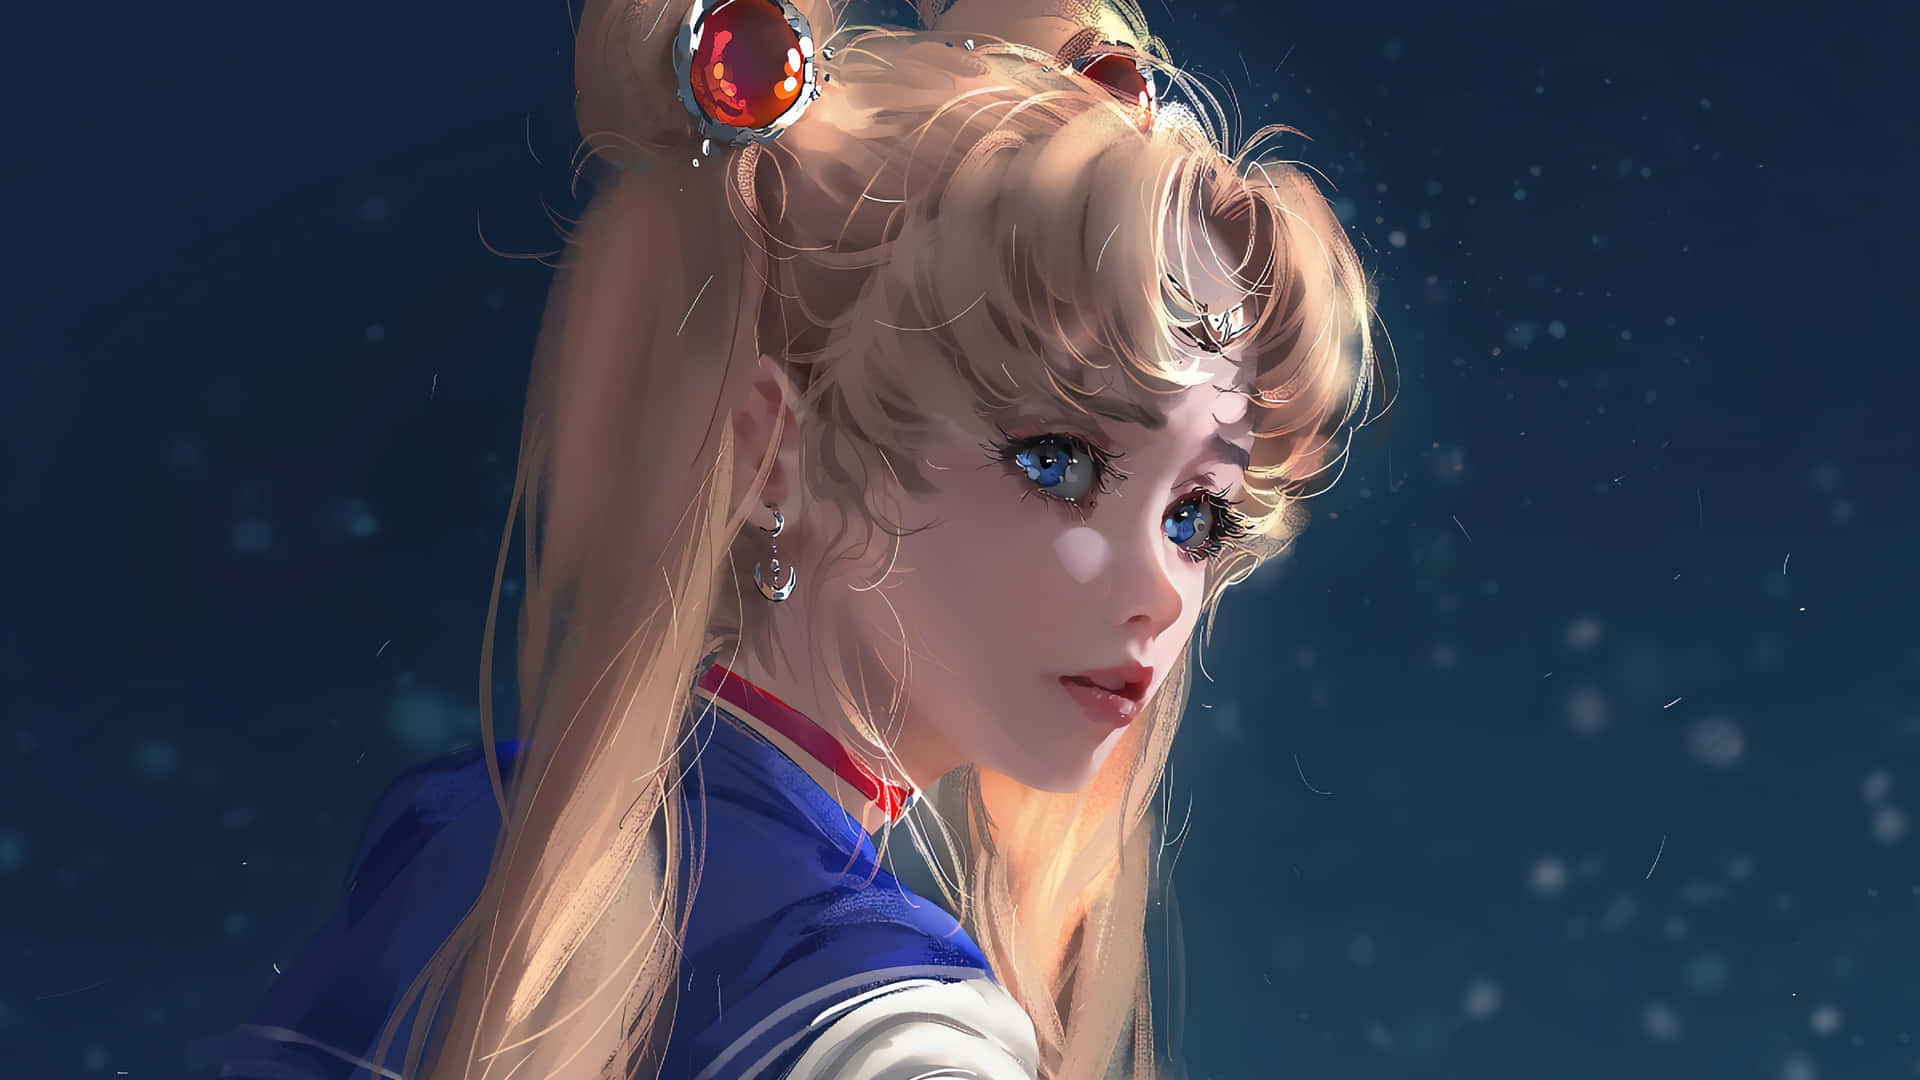 Realistic Sailor Moon PFP Wallpaper